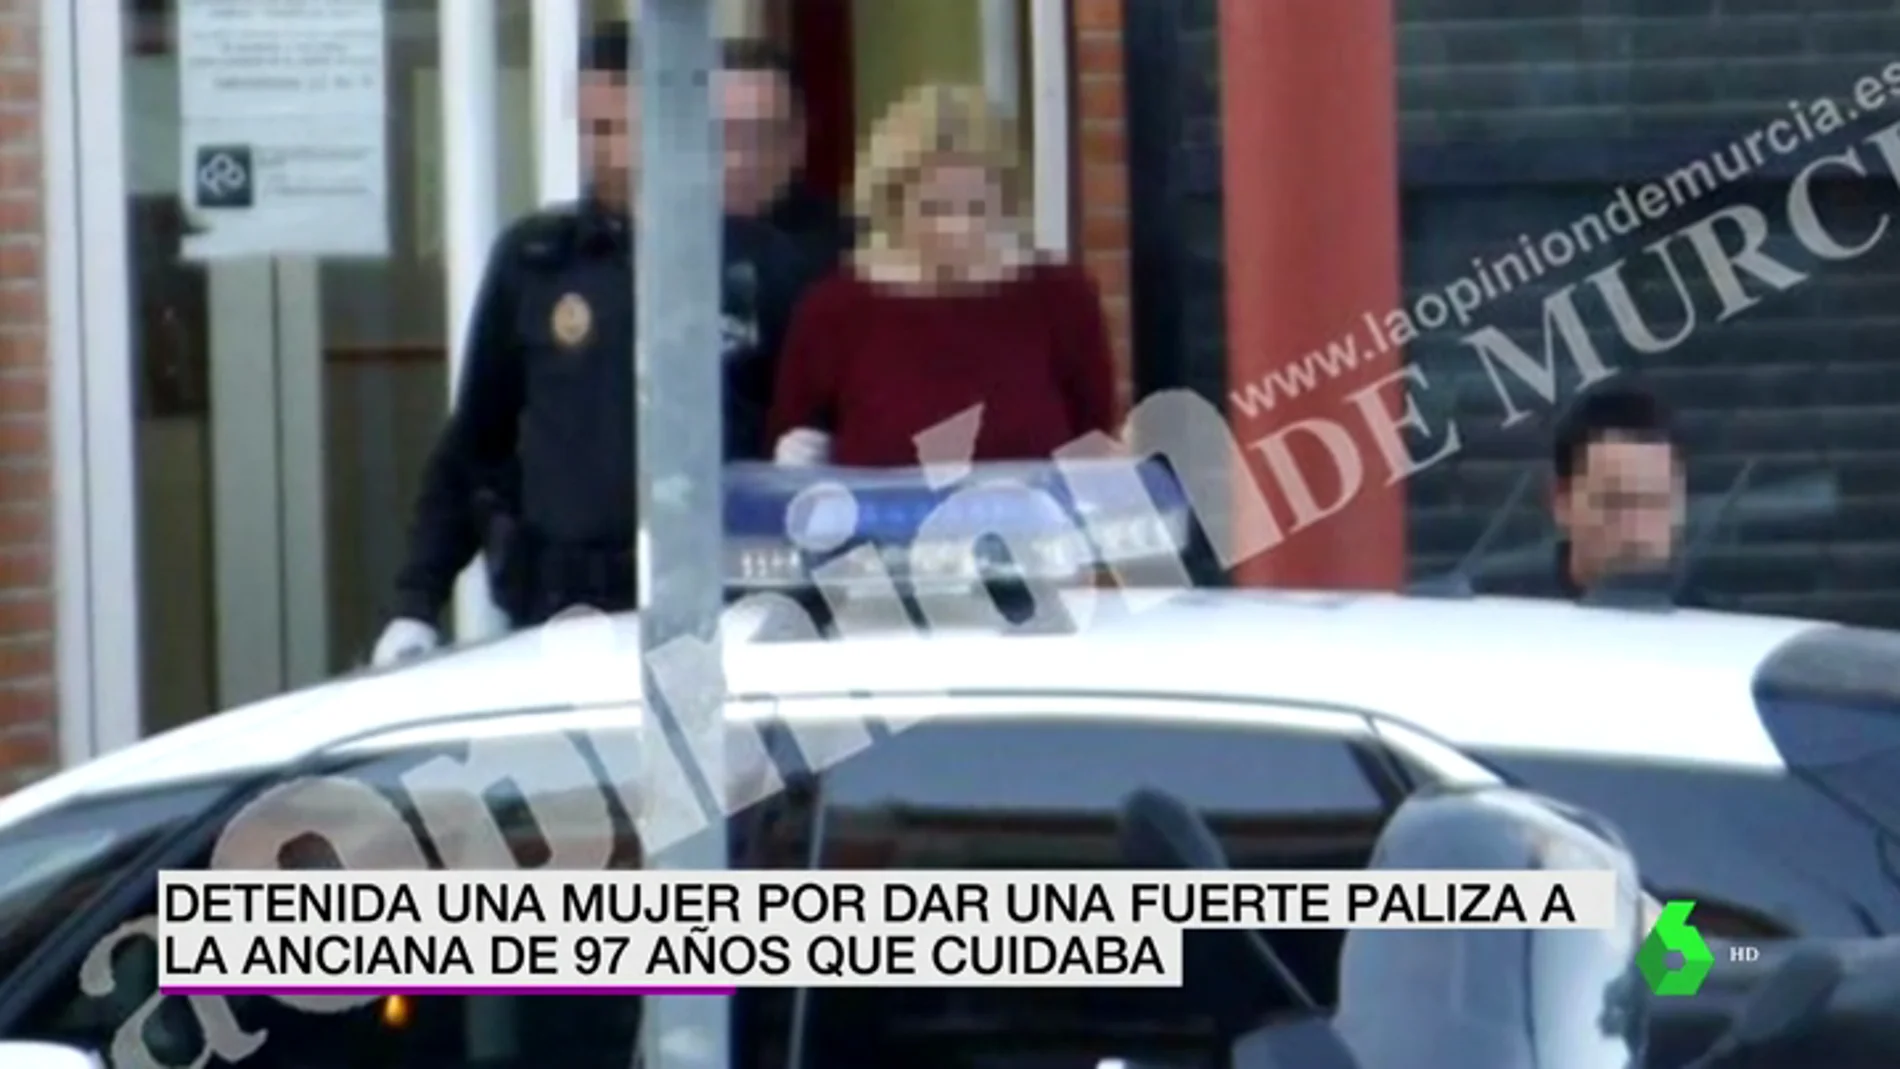 Detención a una mujer en Murcia